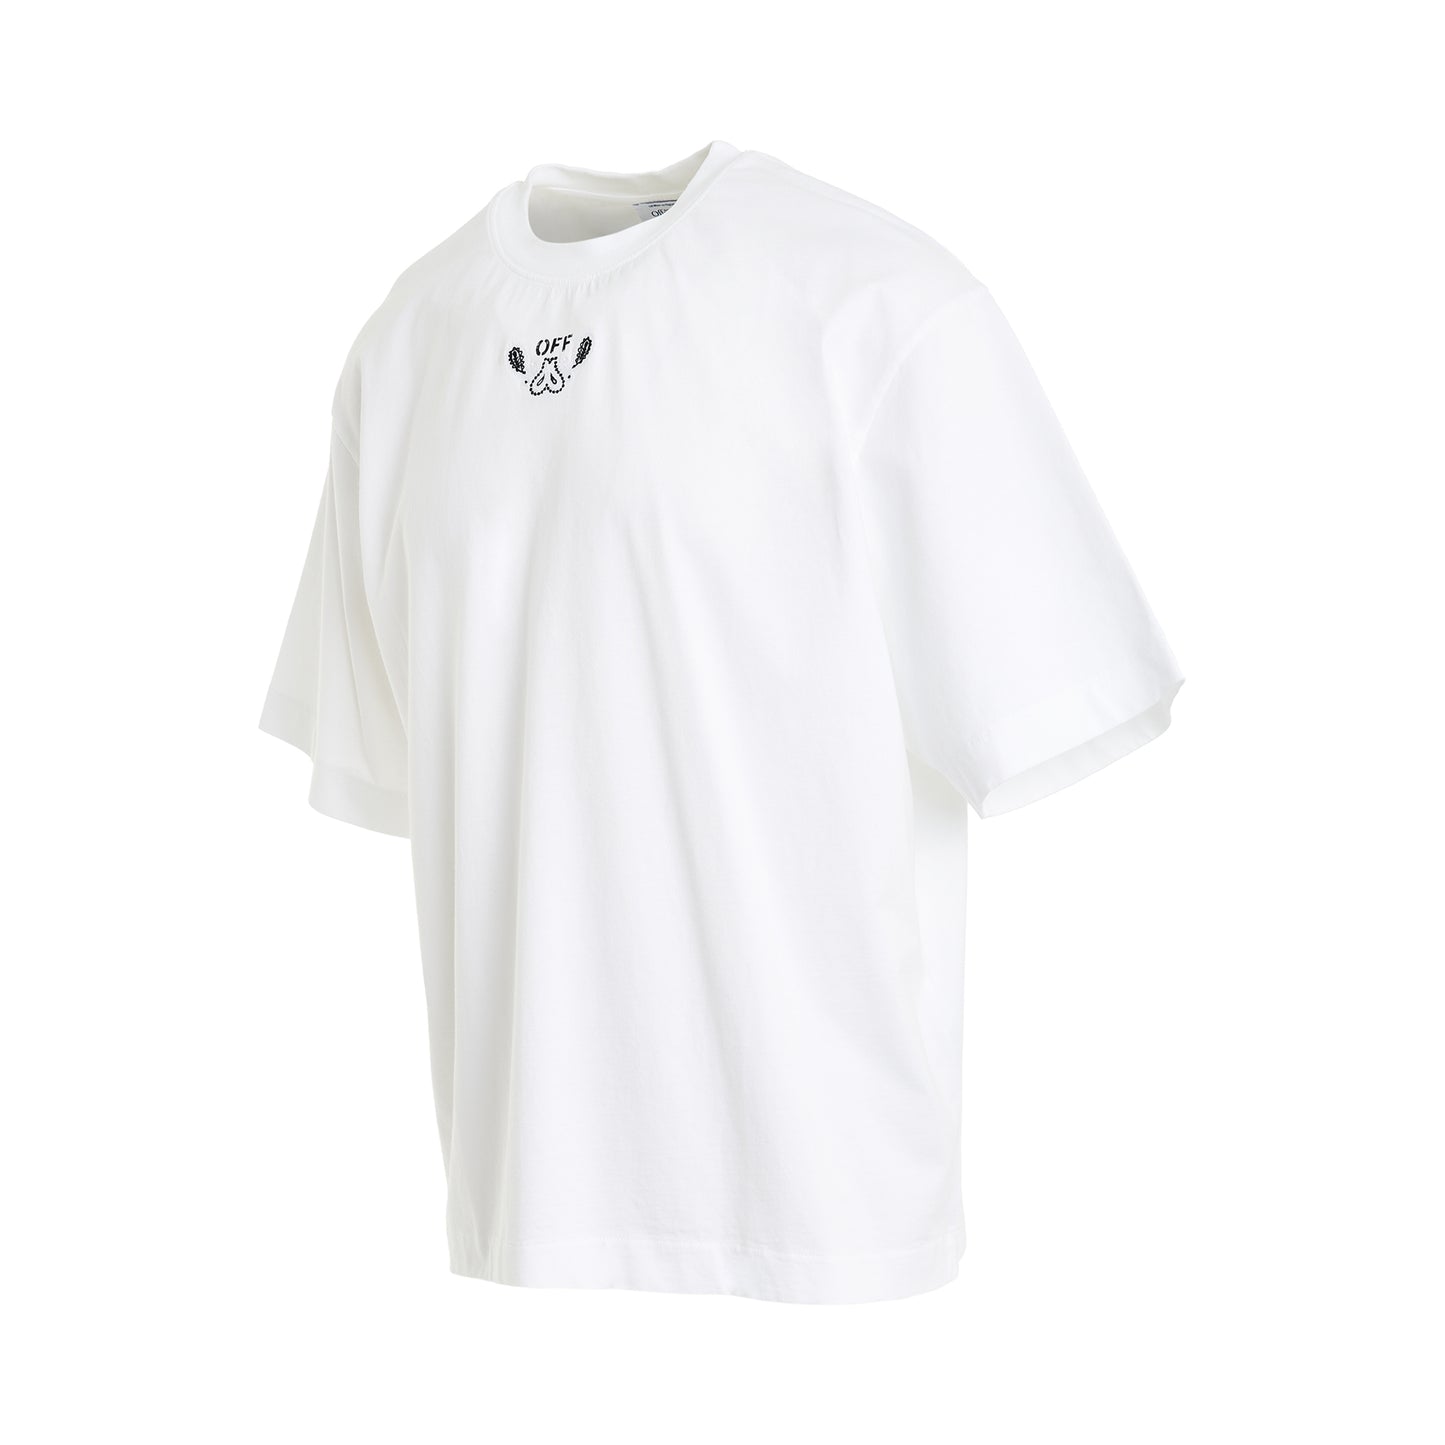 Bandana Arrow Skate T-Shirt in White/Black